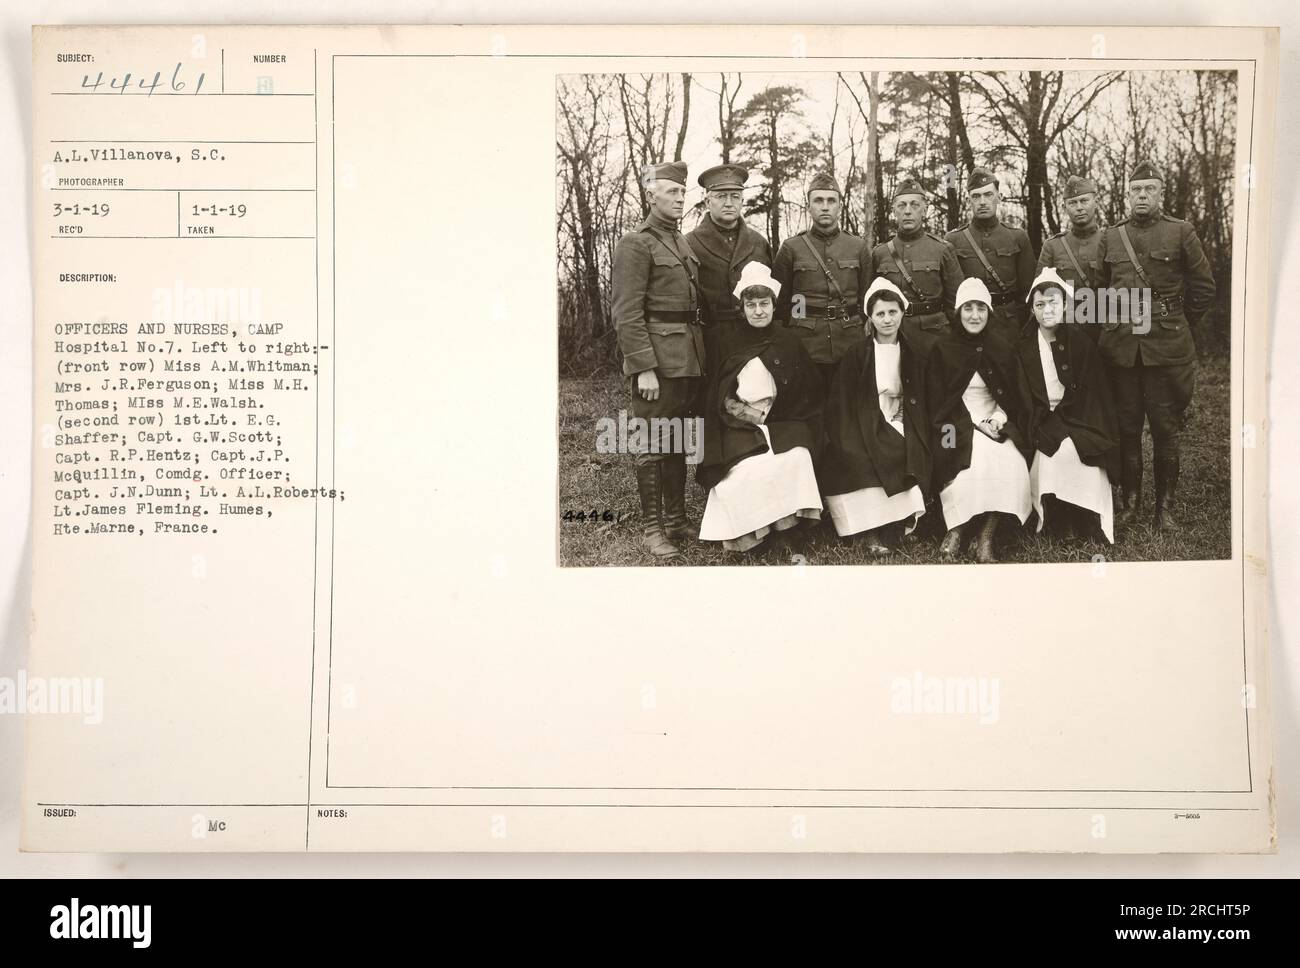 Offiziere und Krankenschwestern des Lagerkrankenhauses Nr. 7 in Humes, hte. Marne, Frankreich, sind auf diesem 1919-Foto abgebildet. Von links nach rechts in der ersten Reihe ist Miss A.M. Whitman, Mrs. J.R. Ferguson, Miss M.H. Thomas und Miss M. E. Walsh. In der zweiten Reihe befinden sich 1. LT. Z. B. Shaffer, Captain G.W. Scott, Kapitän R.P. Hentz, Hauptmann J.P. MoQuillin (befehlshabender Offizier), Kapitän J.N. Dunn, Leutnant A.L. Roberts und LT. James Fleming. Dieses Bild wurde von A.L. aufgenommen Villanova, S.C. und die Nummer des Fotos ist 111-SC-44461. Stockfoto